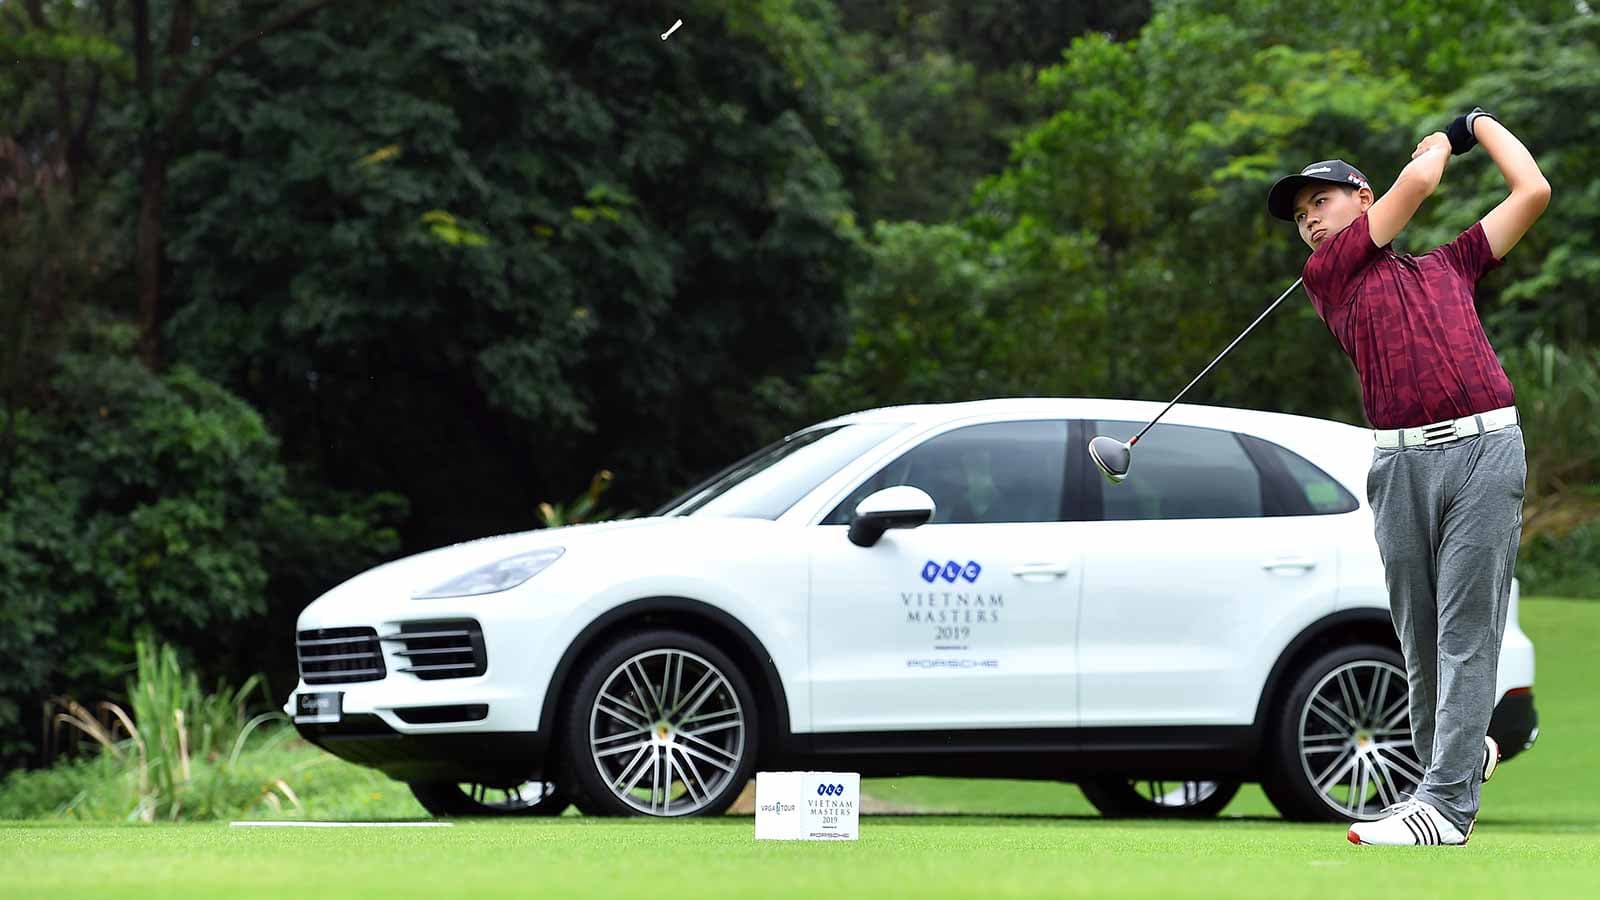 Porsche "bén duyên" cùng Golf trong giải đấu danh giá bậc nhất Việt Nam